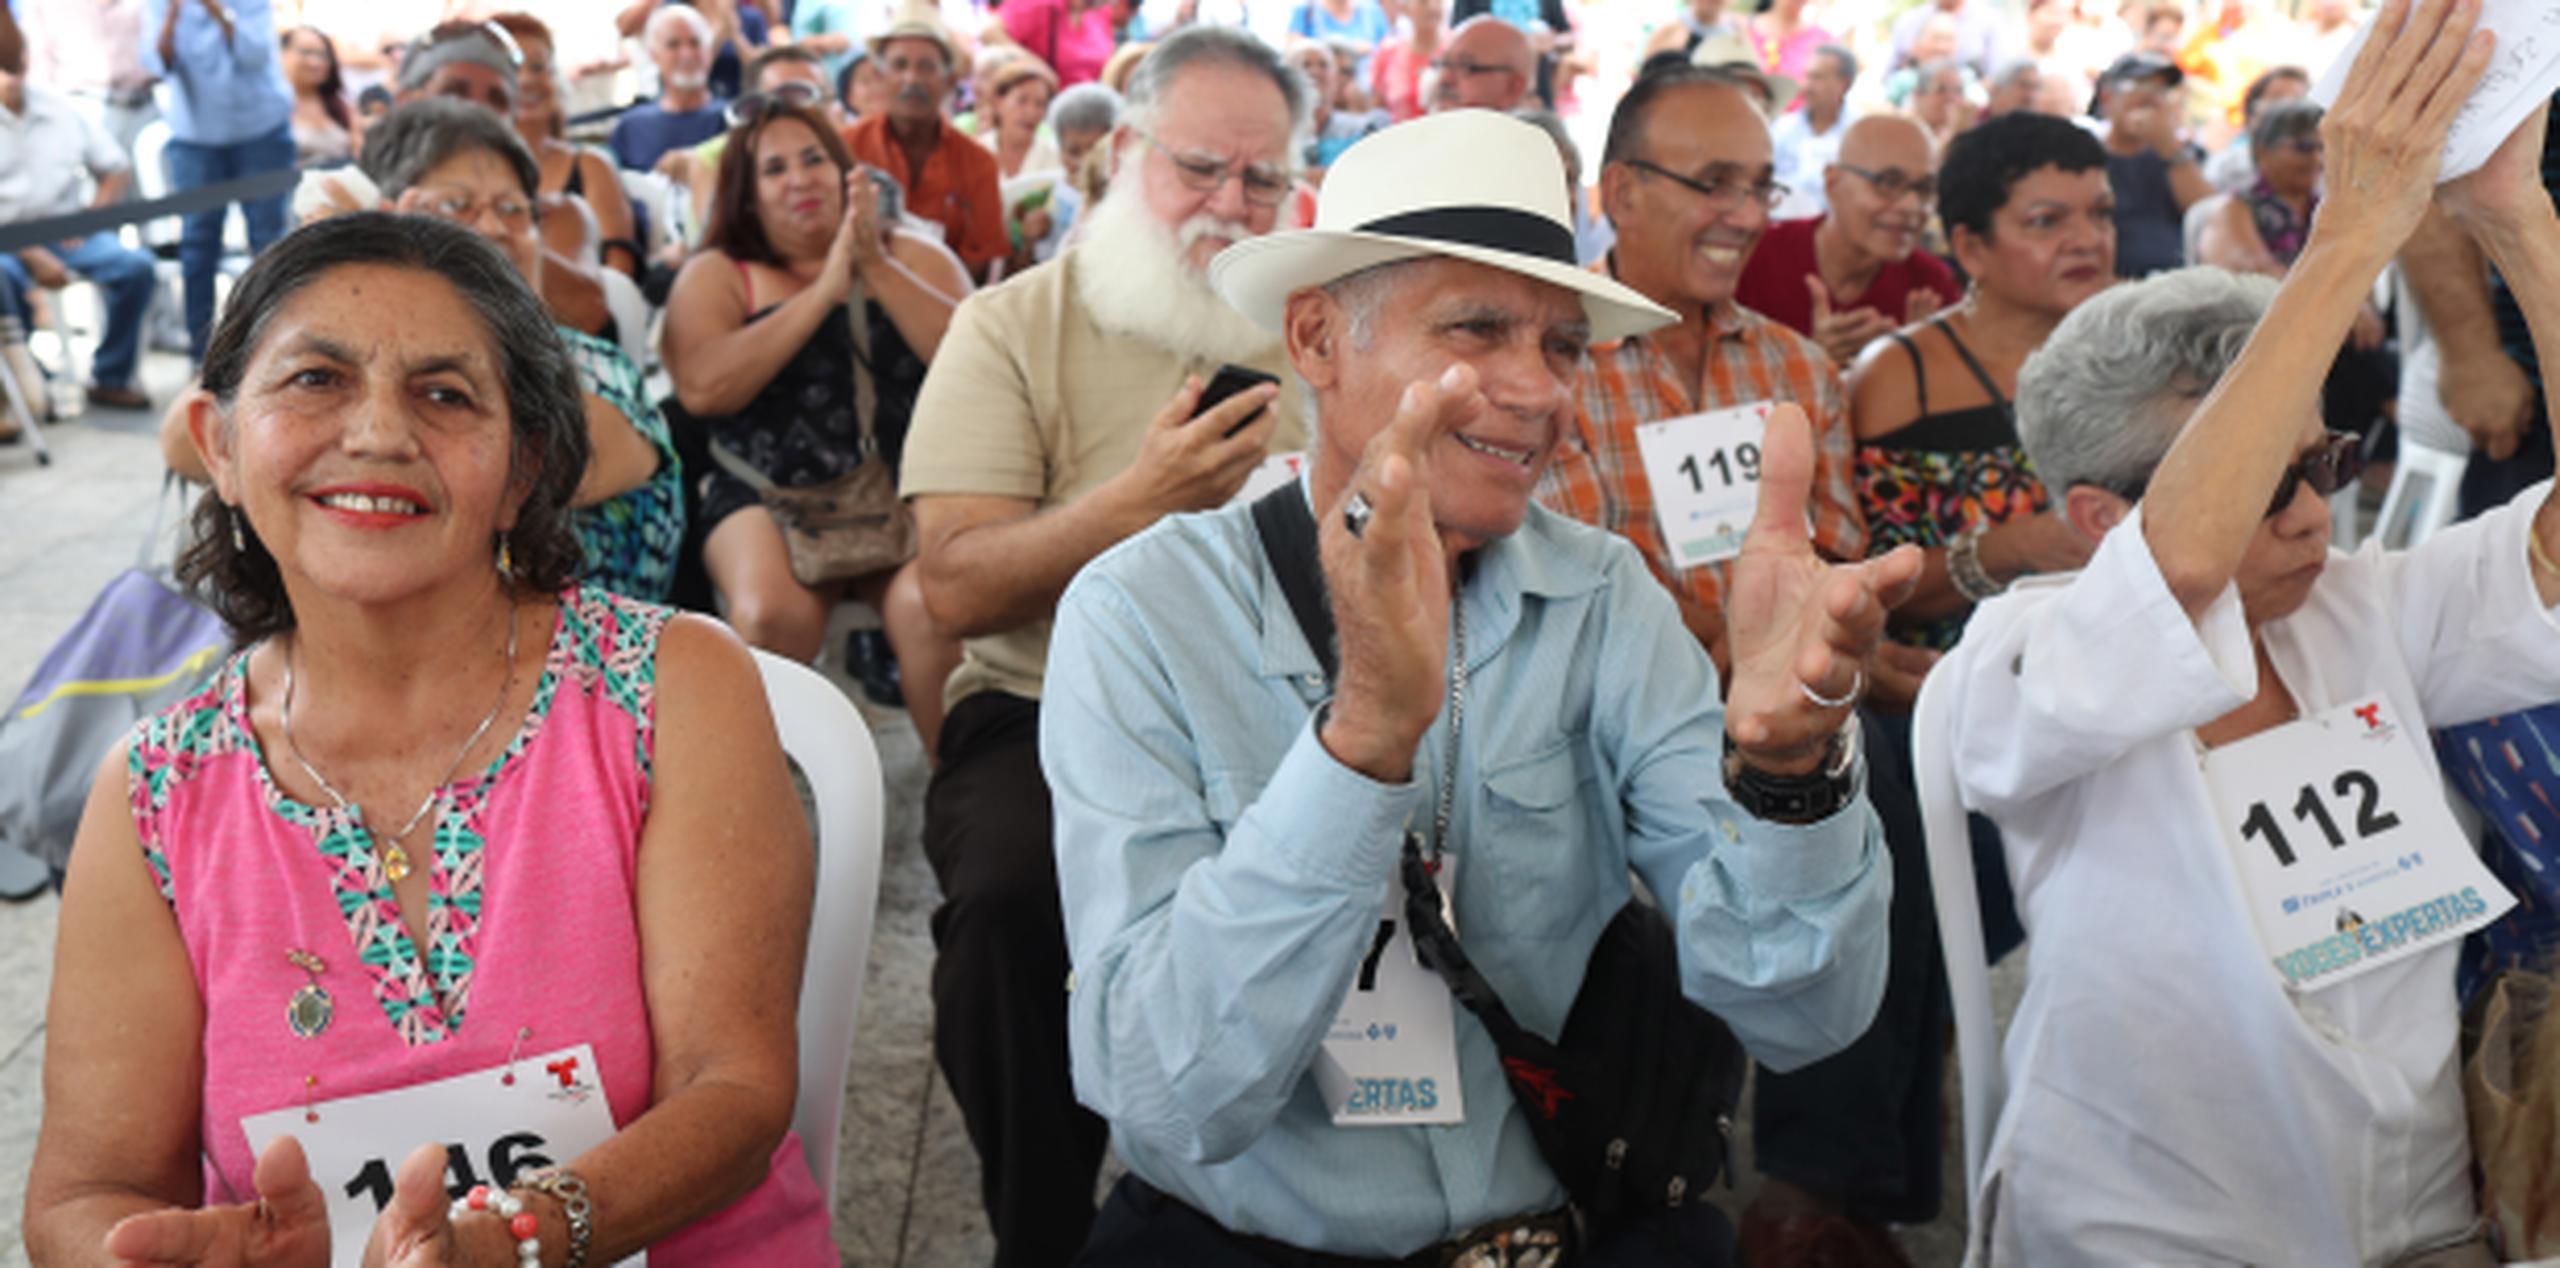 Unas 200 personas llegaron ayer a la plaza Almirante Cristóbal Colón de Mayagüez, primera parada de las audiciones del  nuevo reality show Voces expertas. (vanessa.serra@gfrmedia.com)